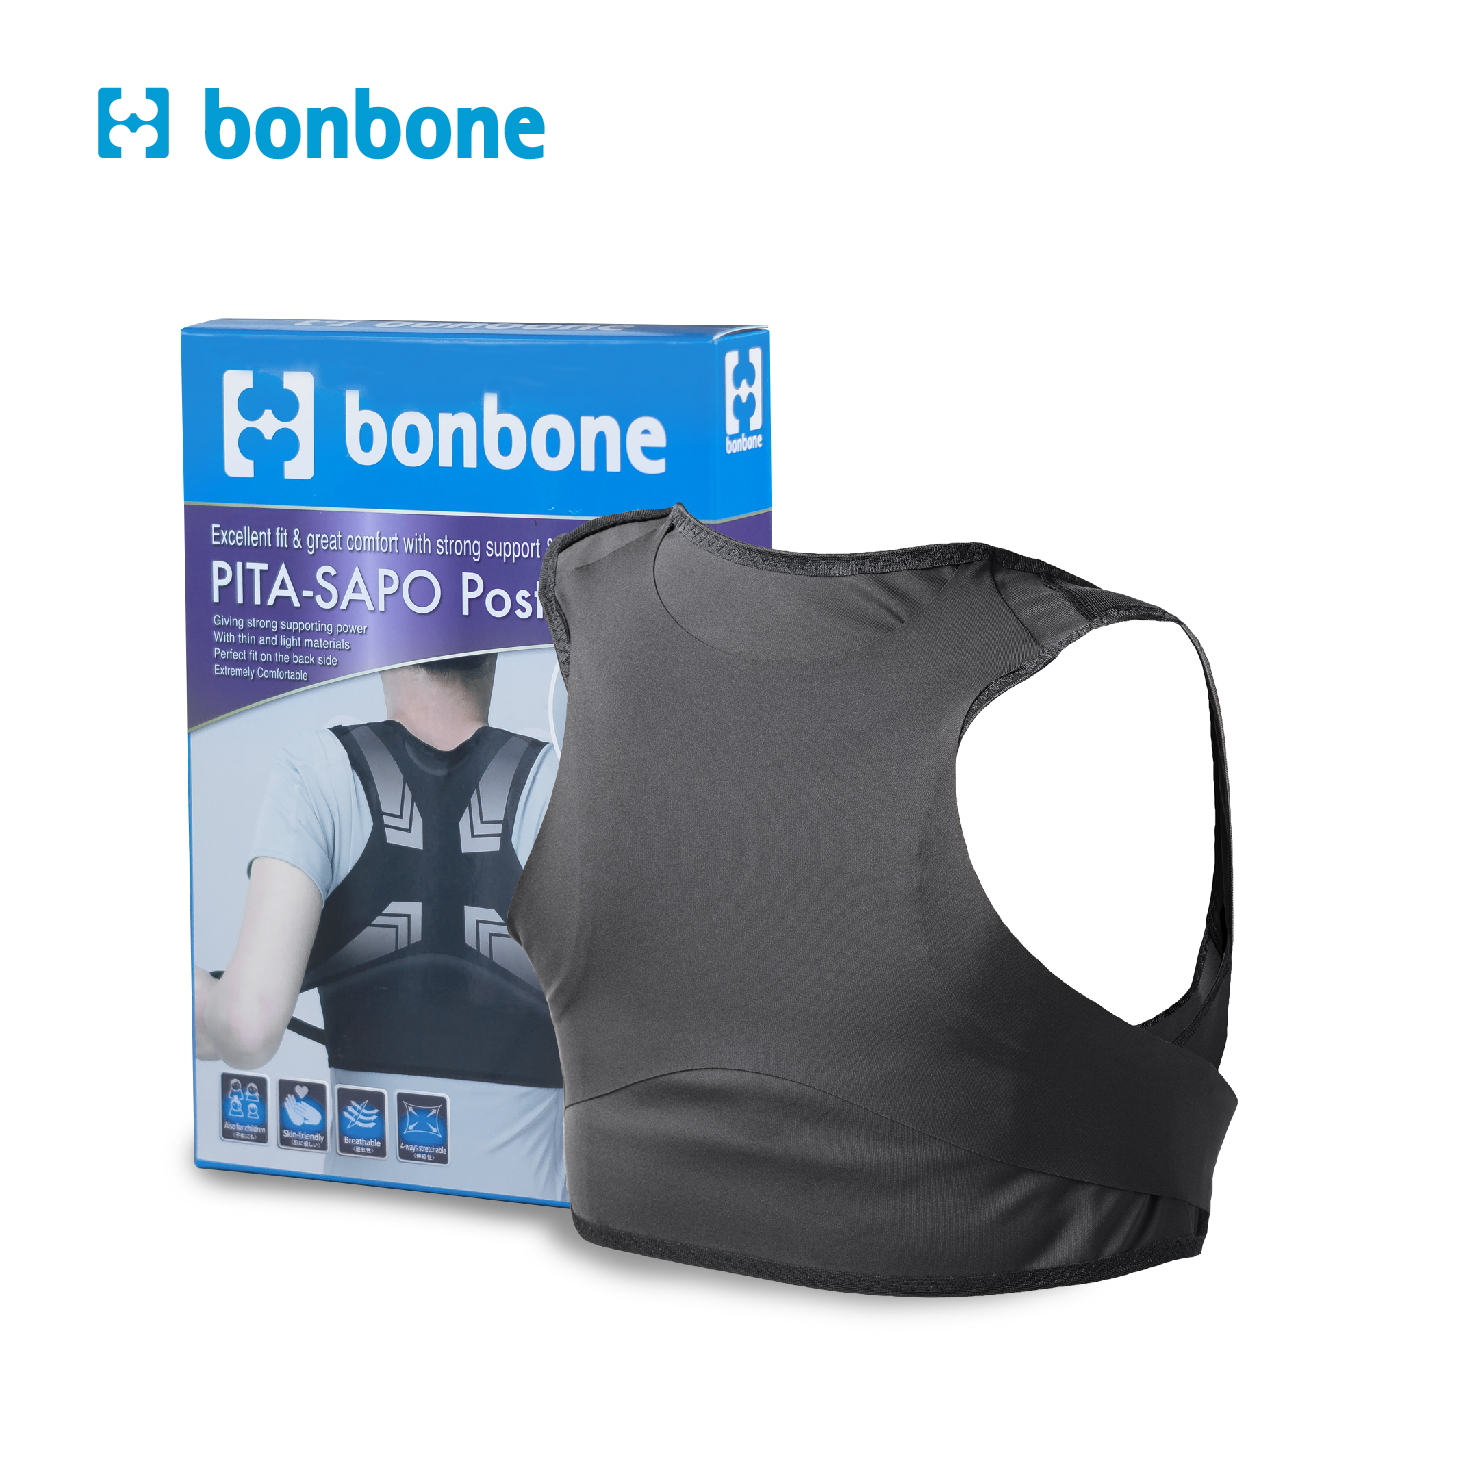 Đai chống gù lưng PITA SAPO Posture – Bonbone